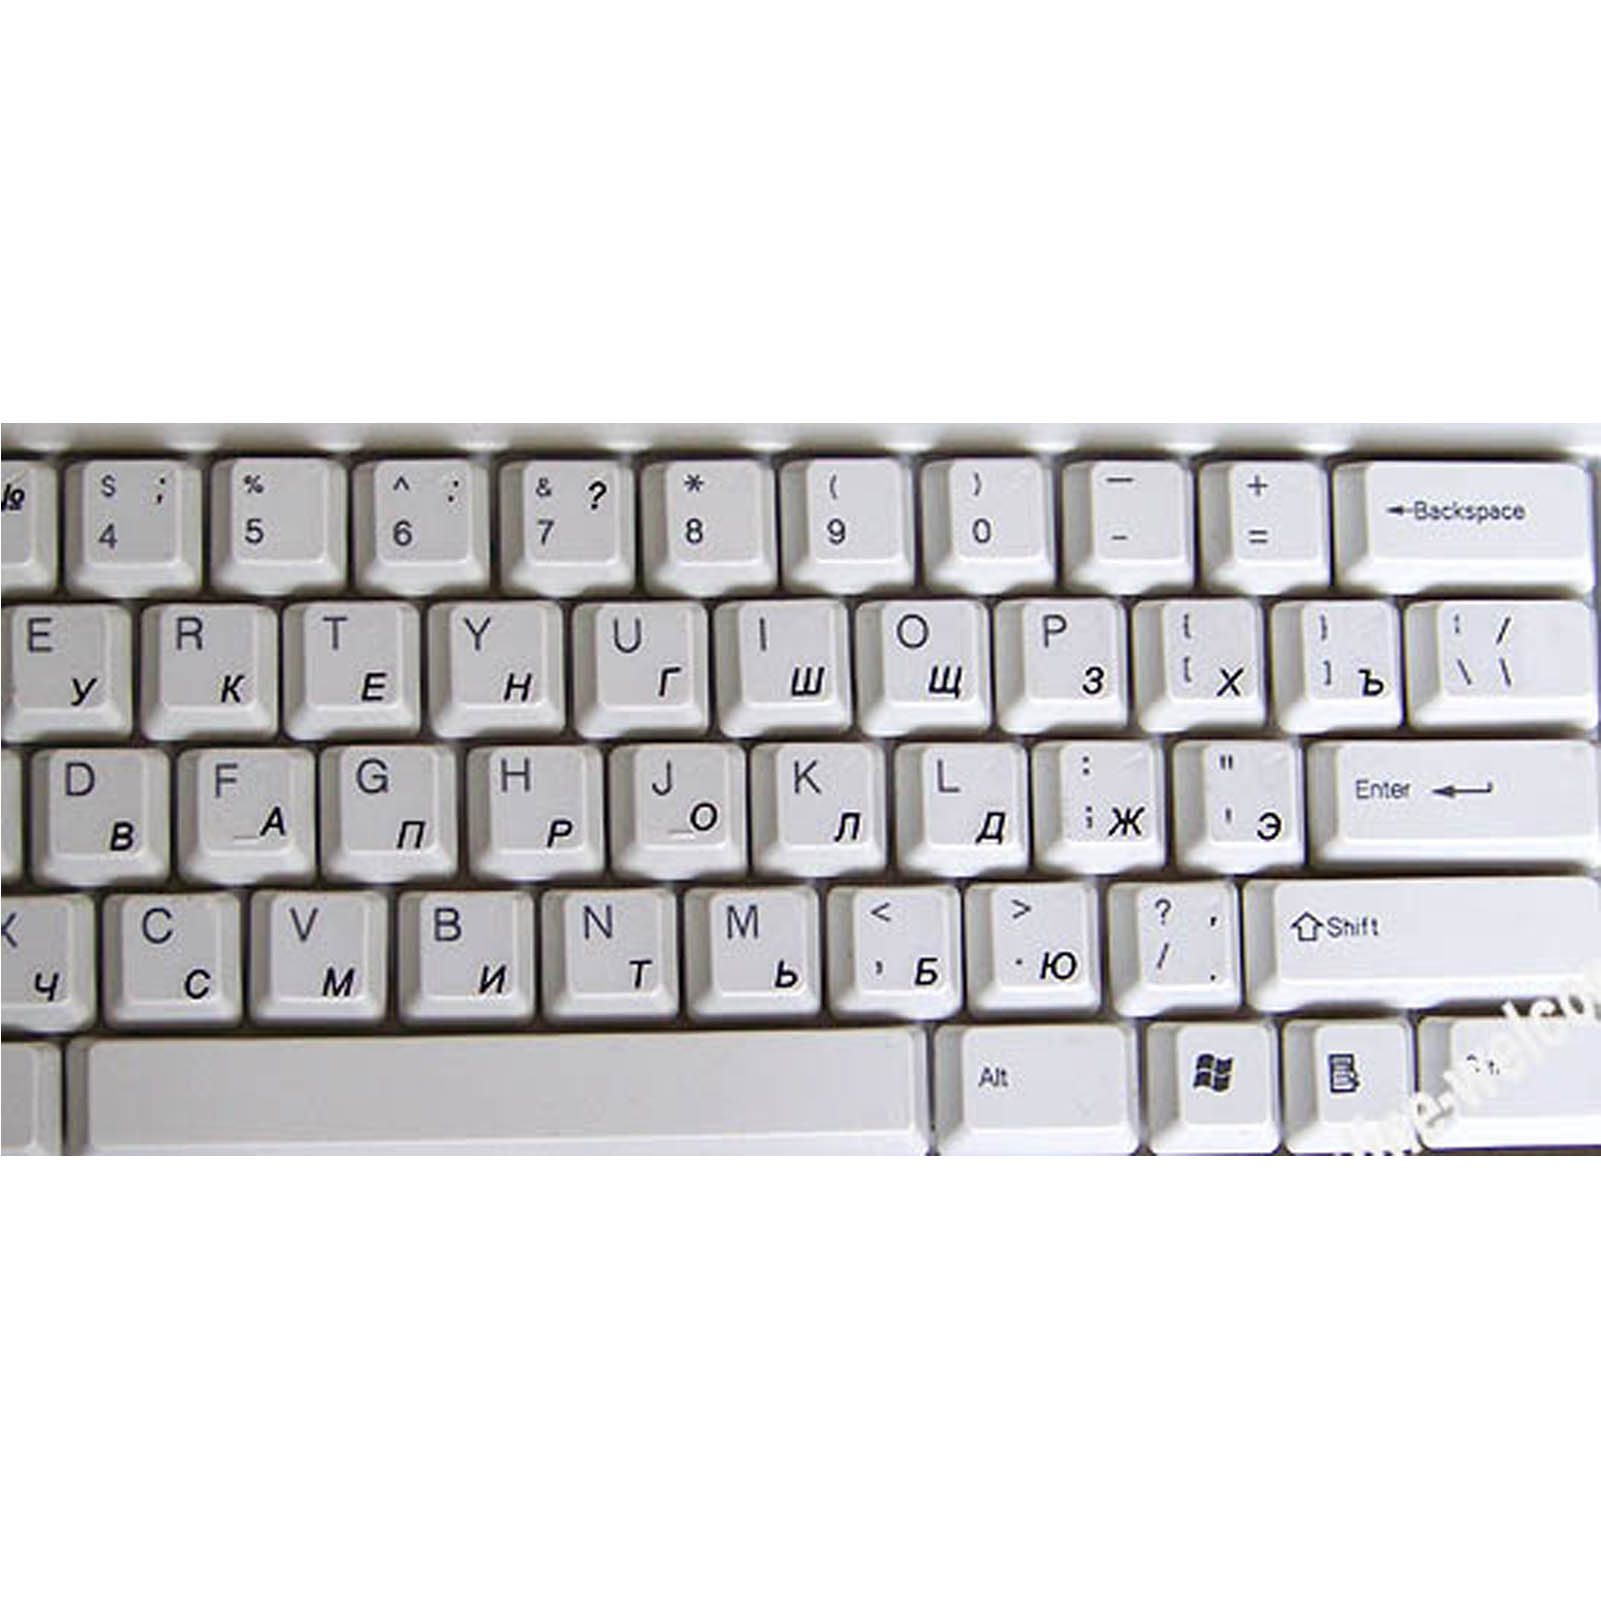 Musical keyboard for mac